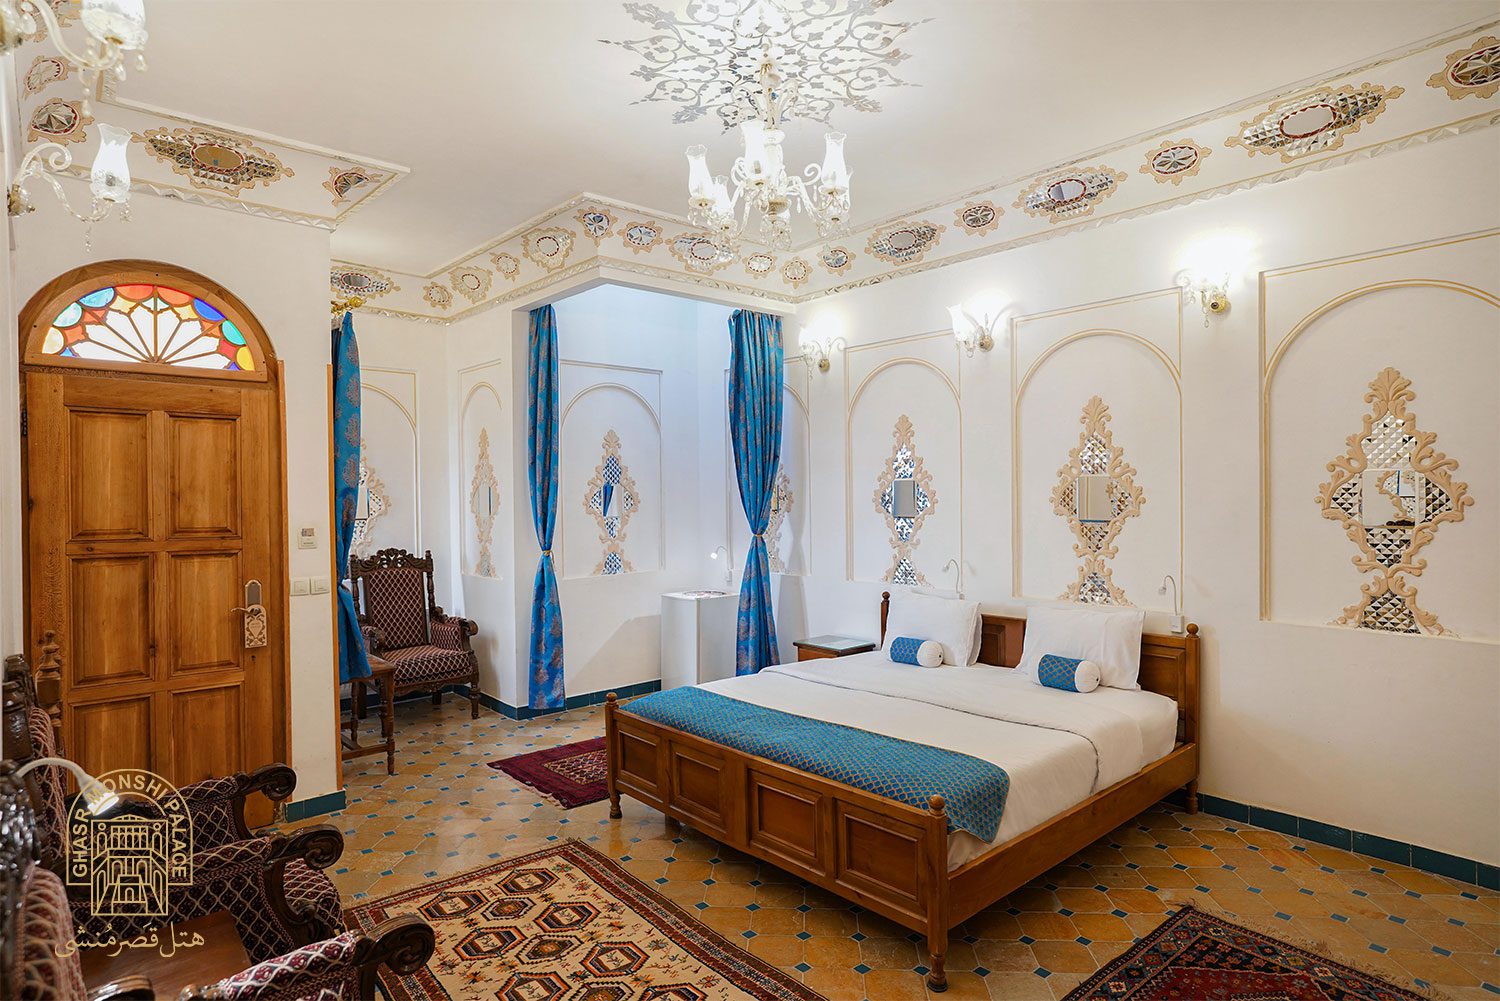 هتل قصرمنشی اصفهان اتاق افشاریه